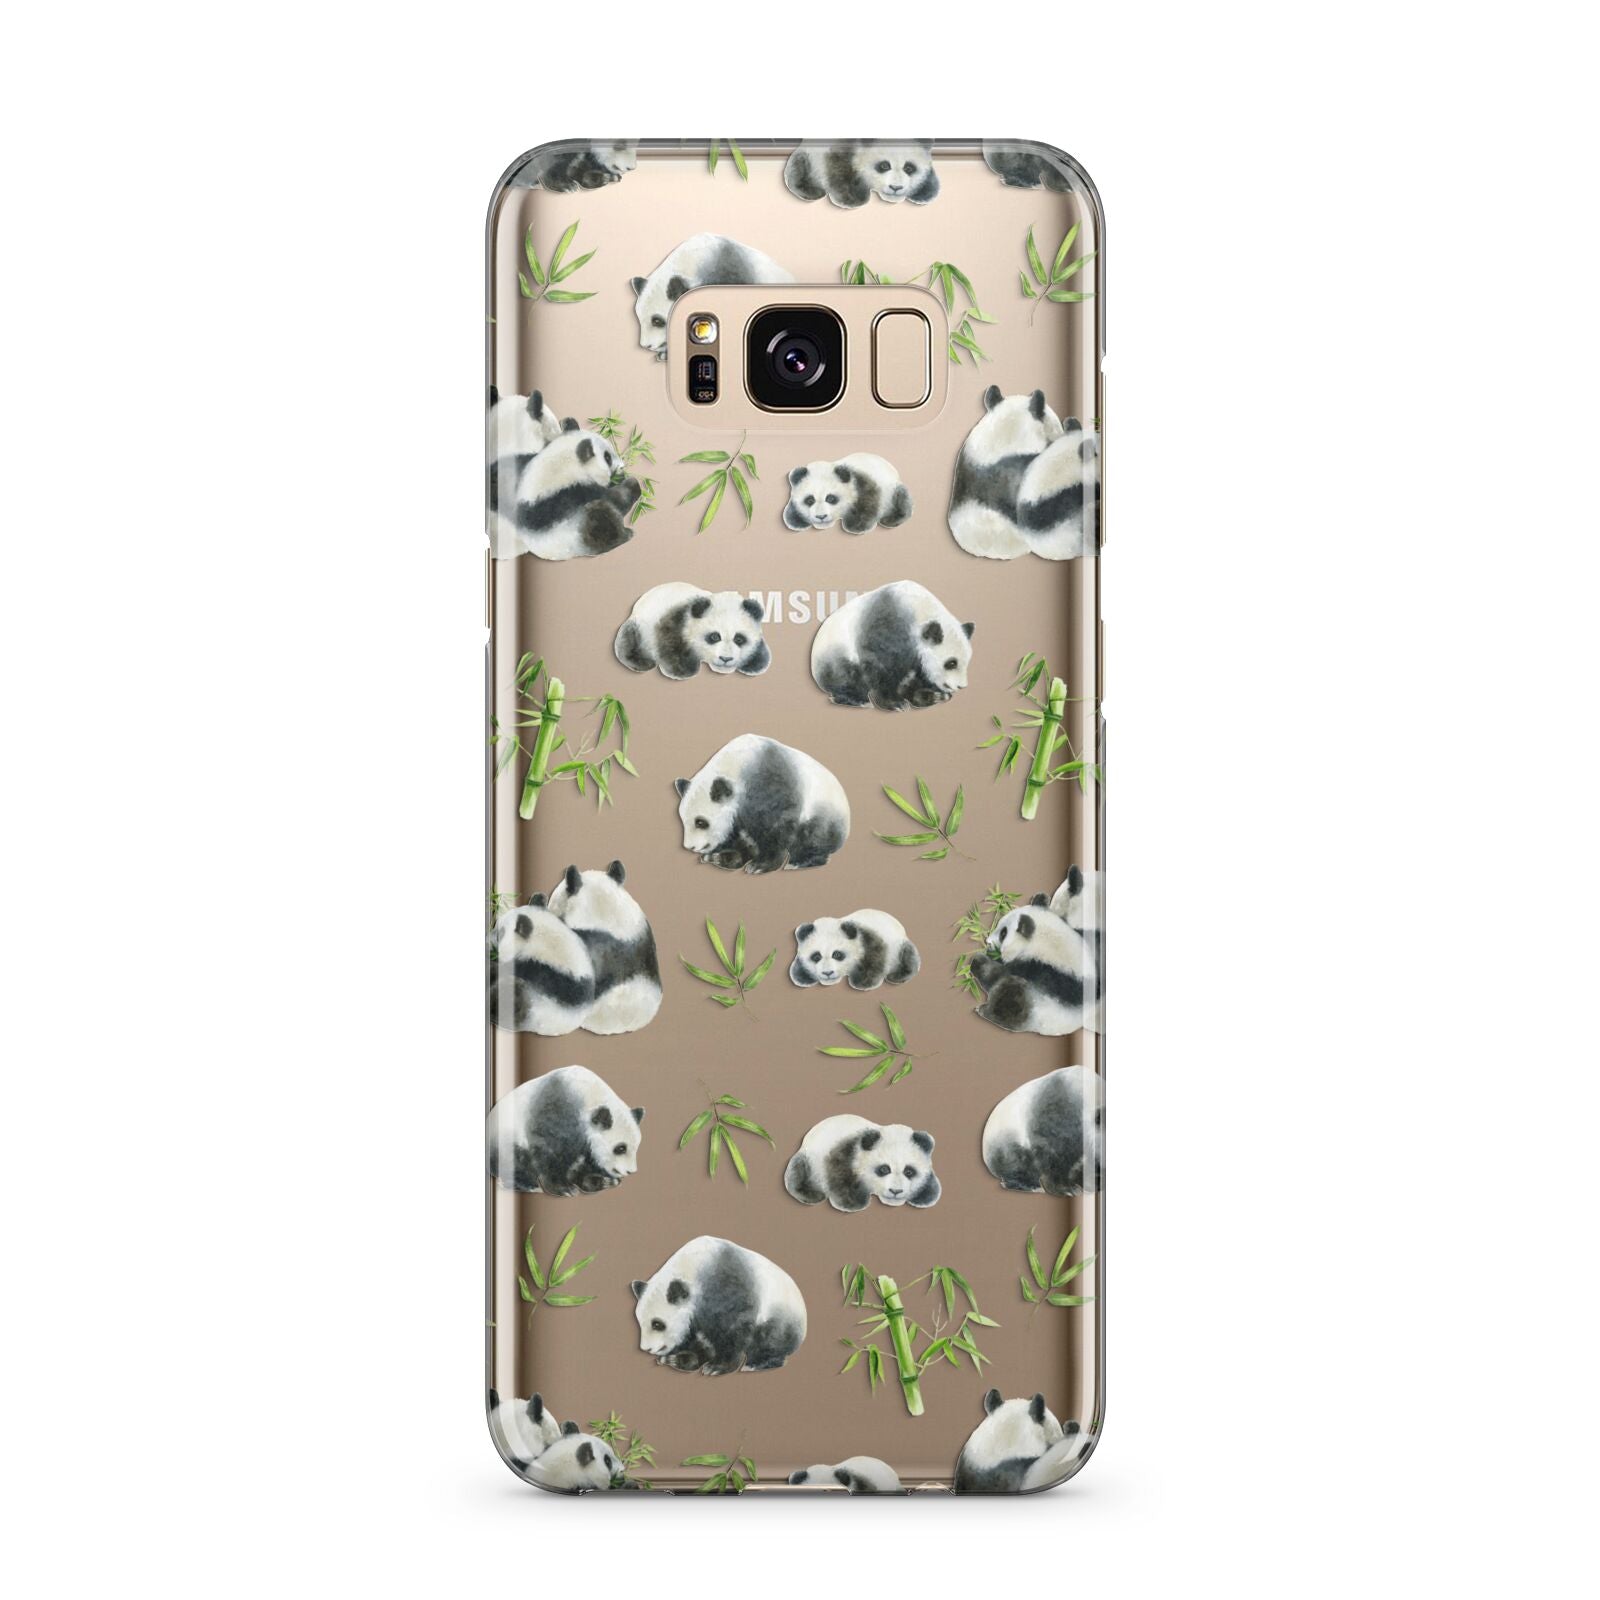 Panda Samsung Galaxy S8 Plus Case